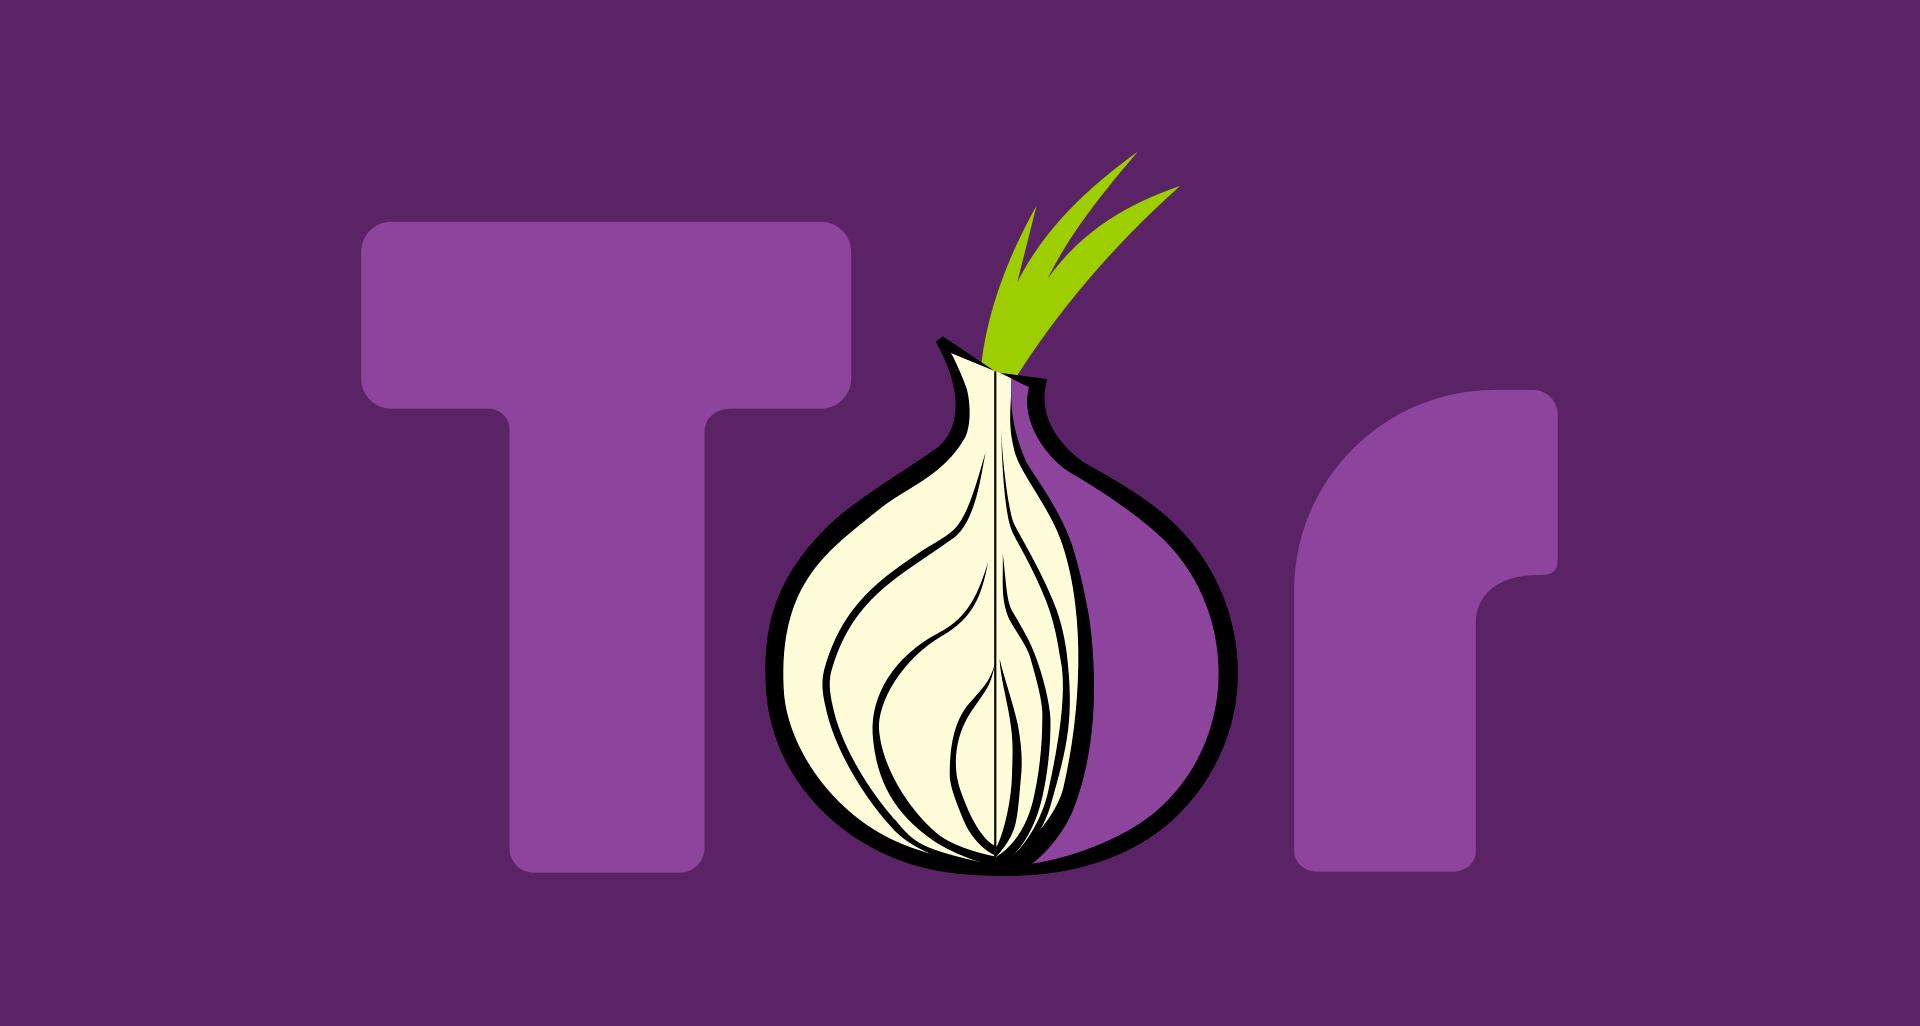 Logo do projeto/browser Tor. (Tor)